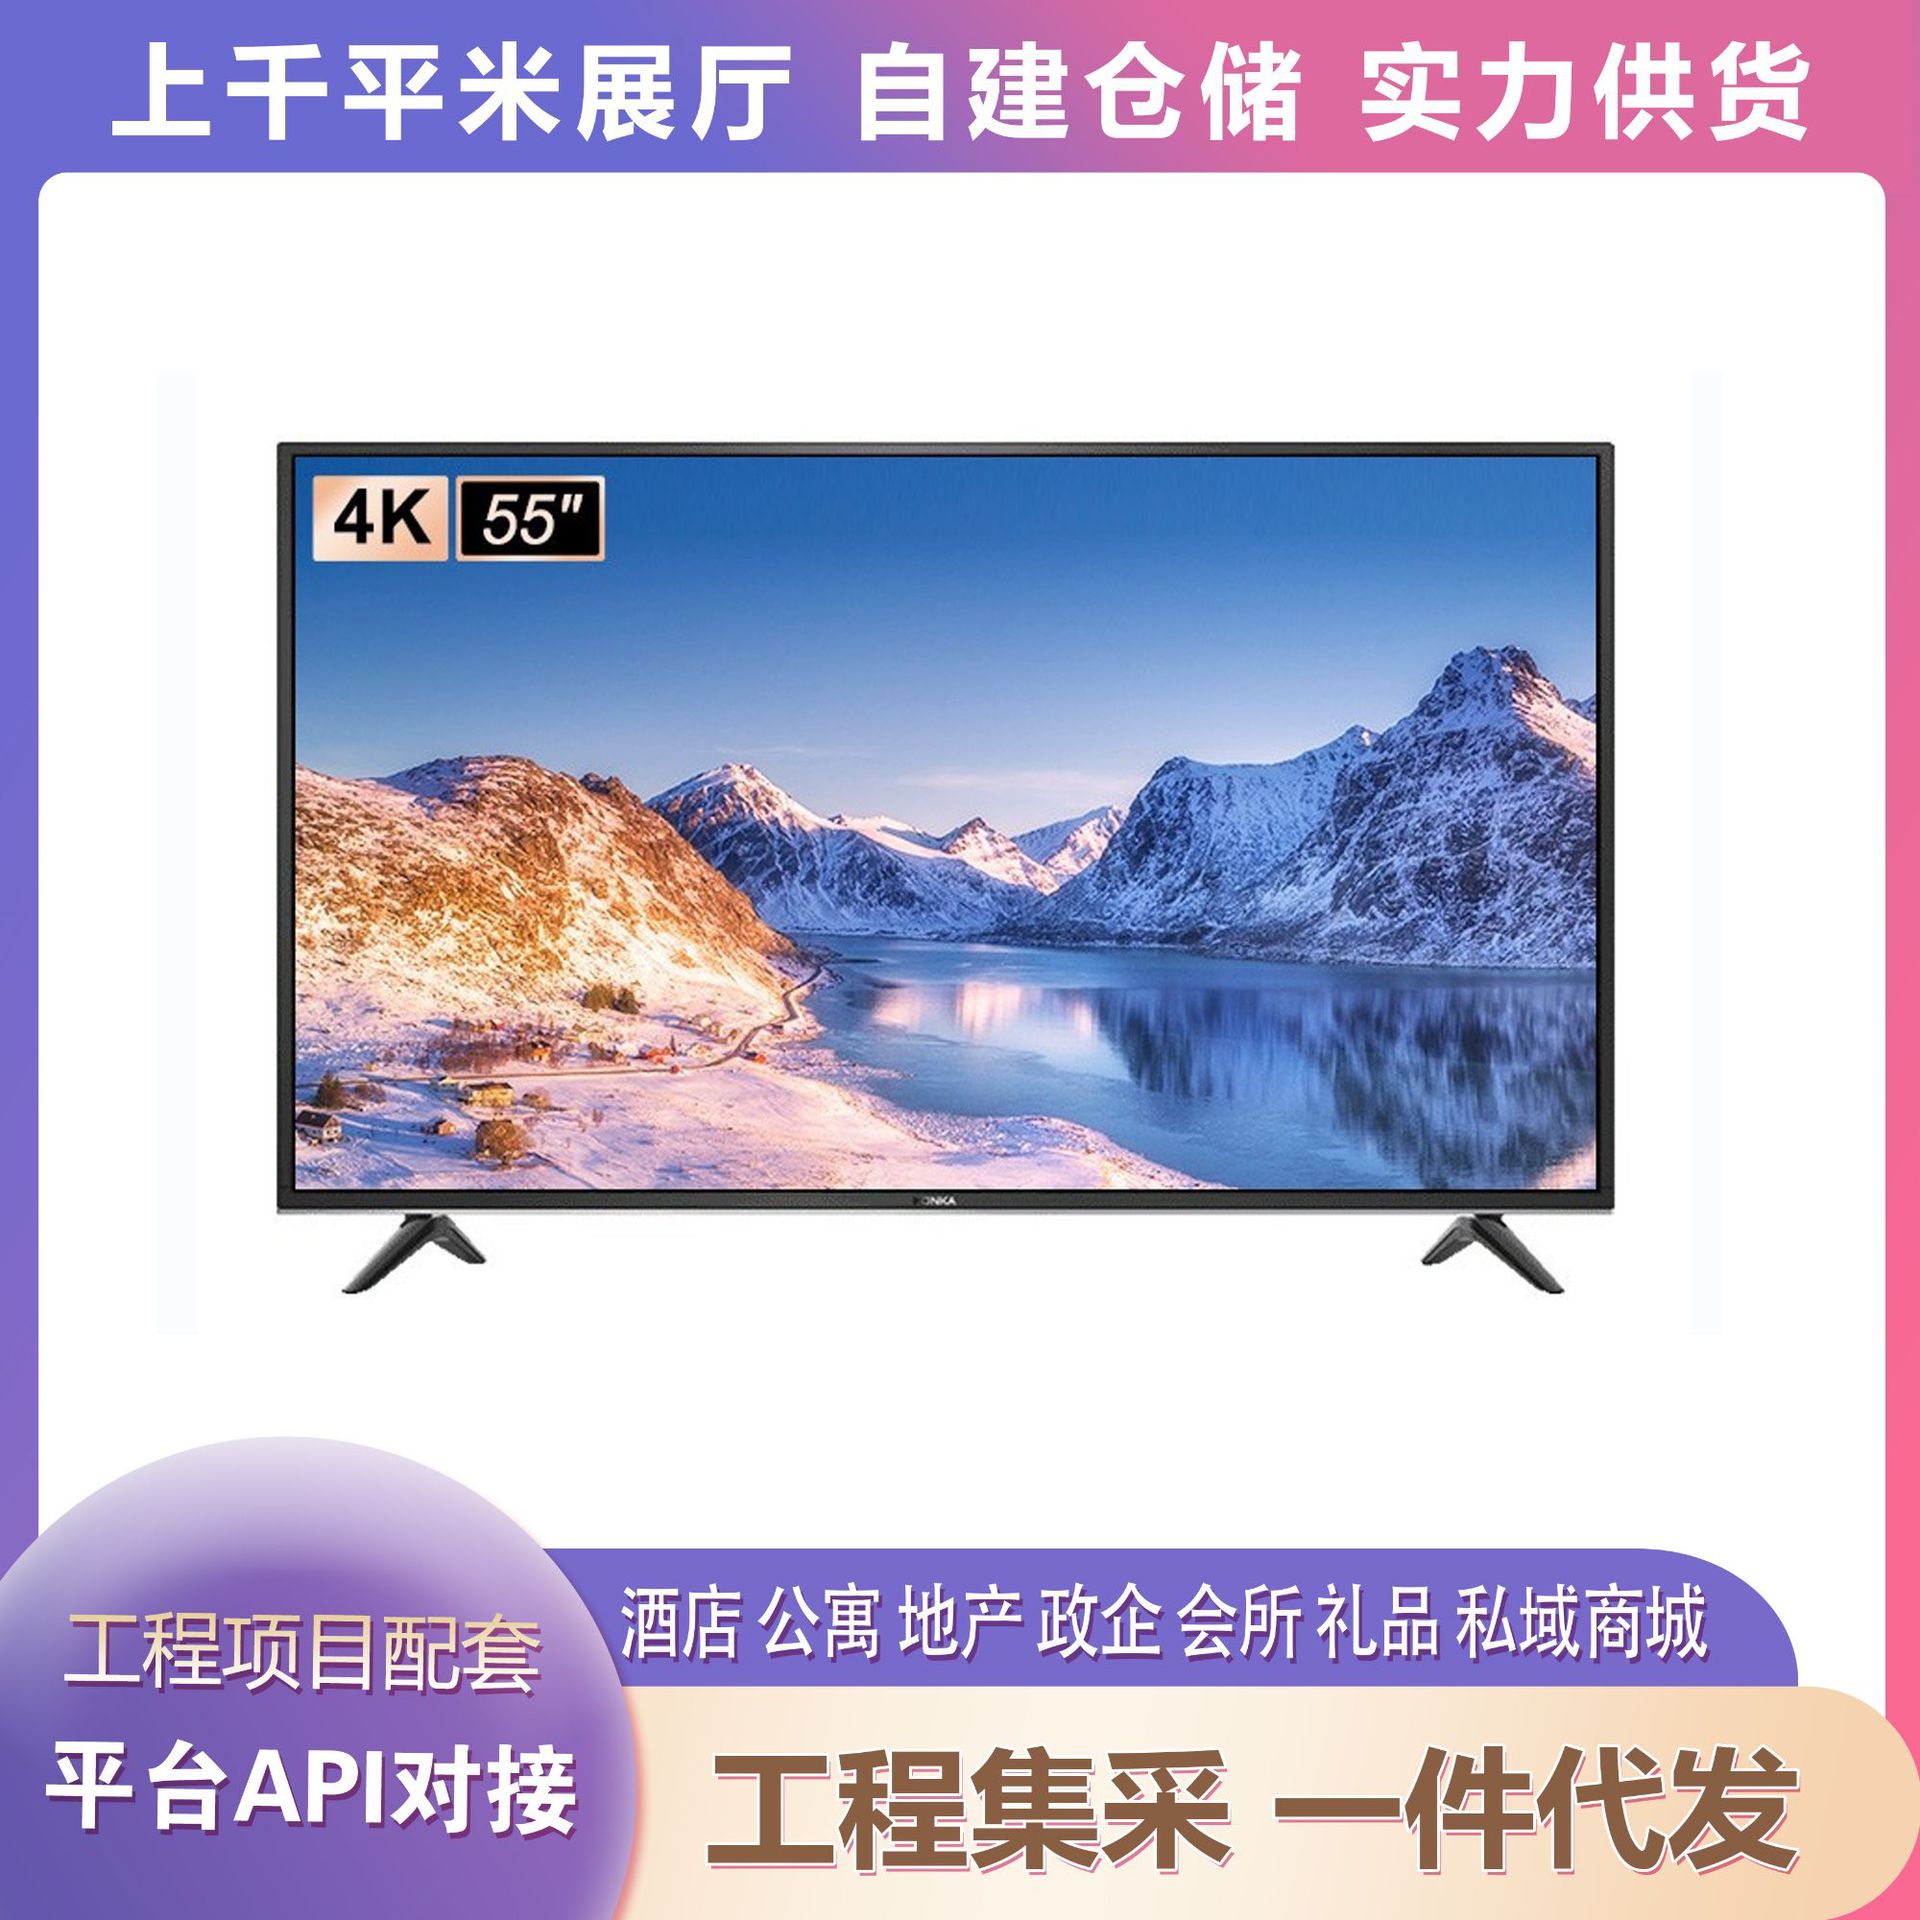 康佳 LED55G30UE 55寸4K超高清智能电视适用礼品采购房产集采代发